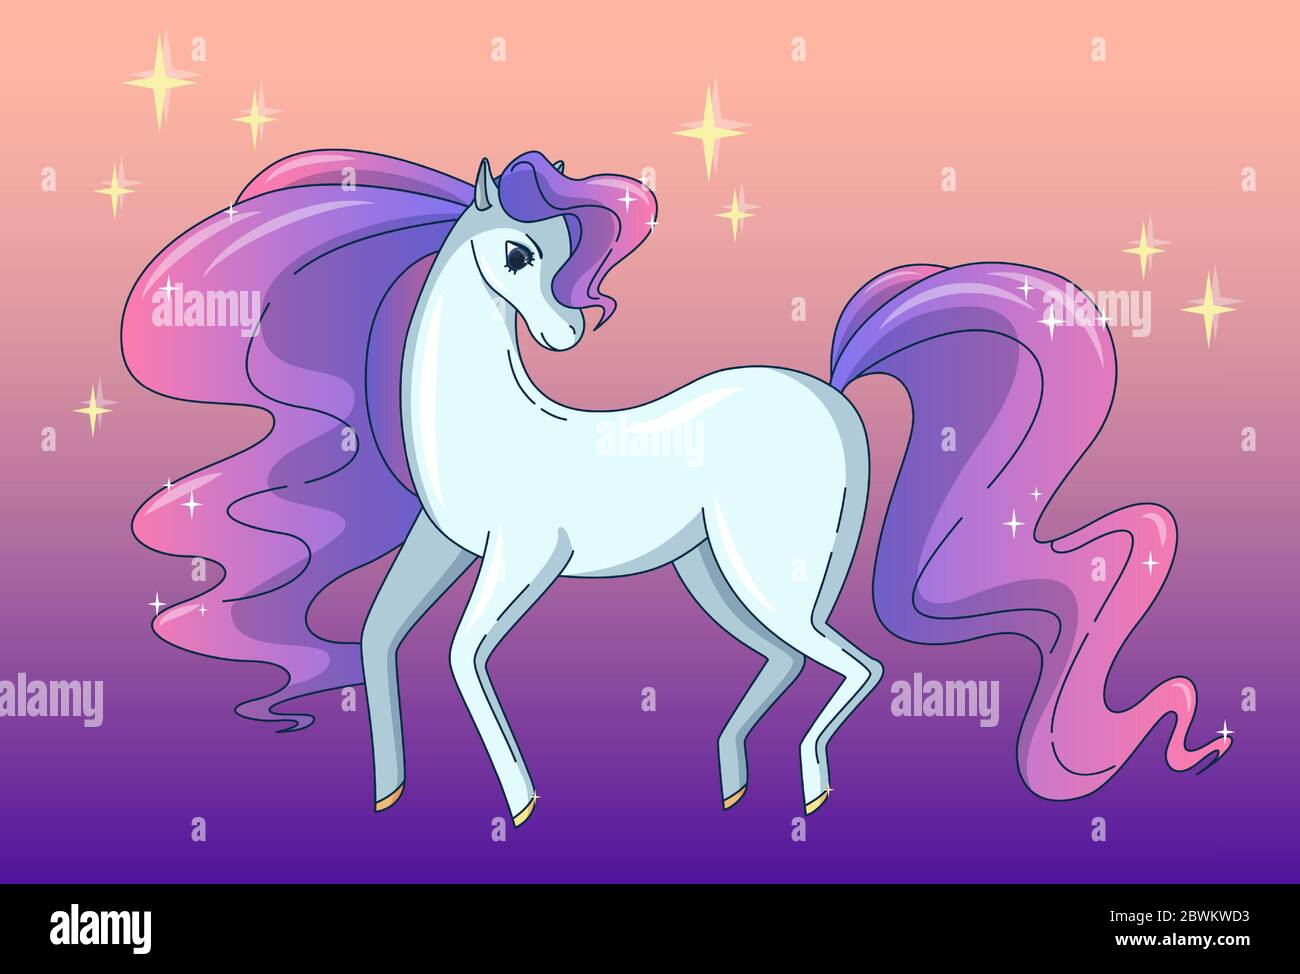 Hübsches Pferd mit winkender Mähne und Schwanz, glänzend wie ein Brillant. Vektor-Illustration in niedlichen Cartoon-Stil Stock Vektor